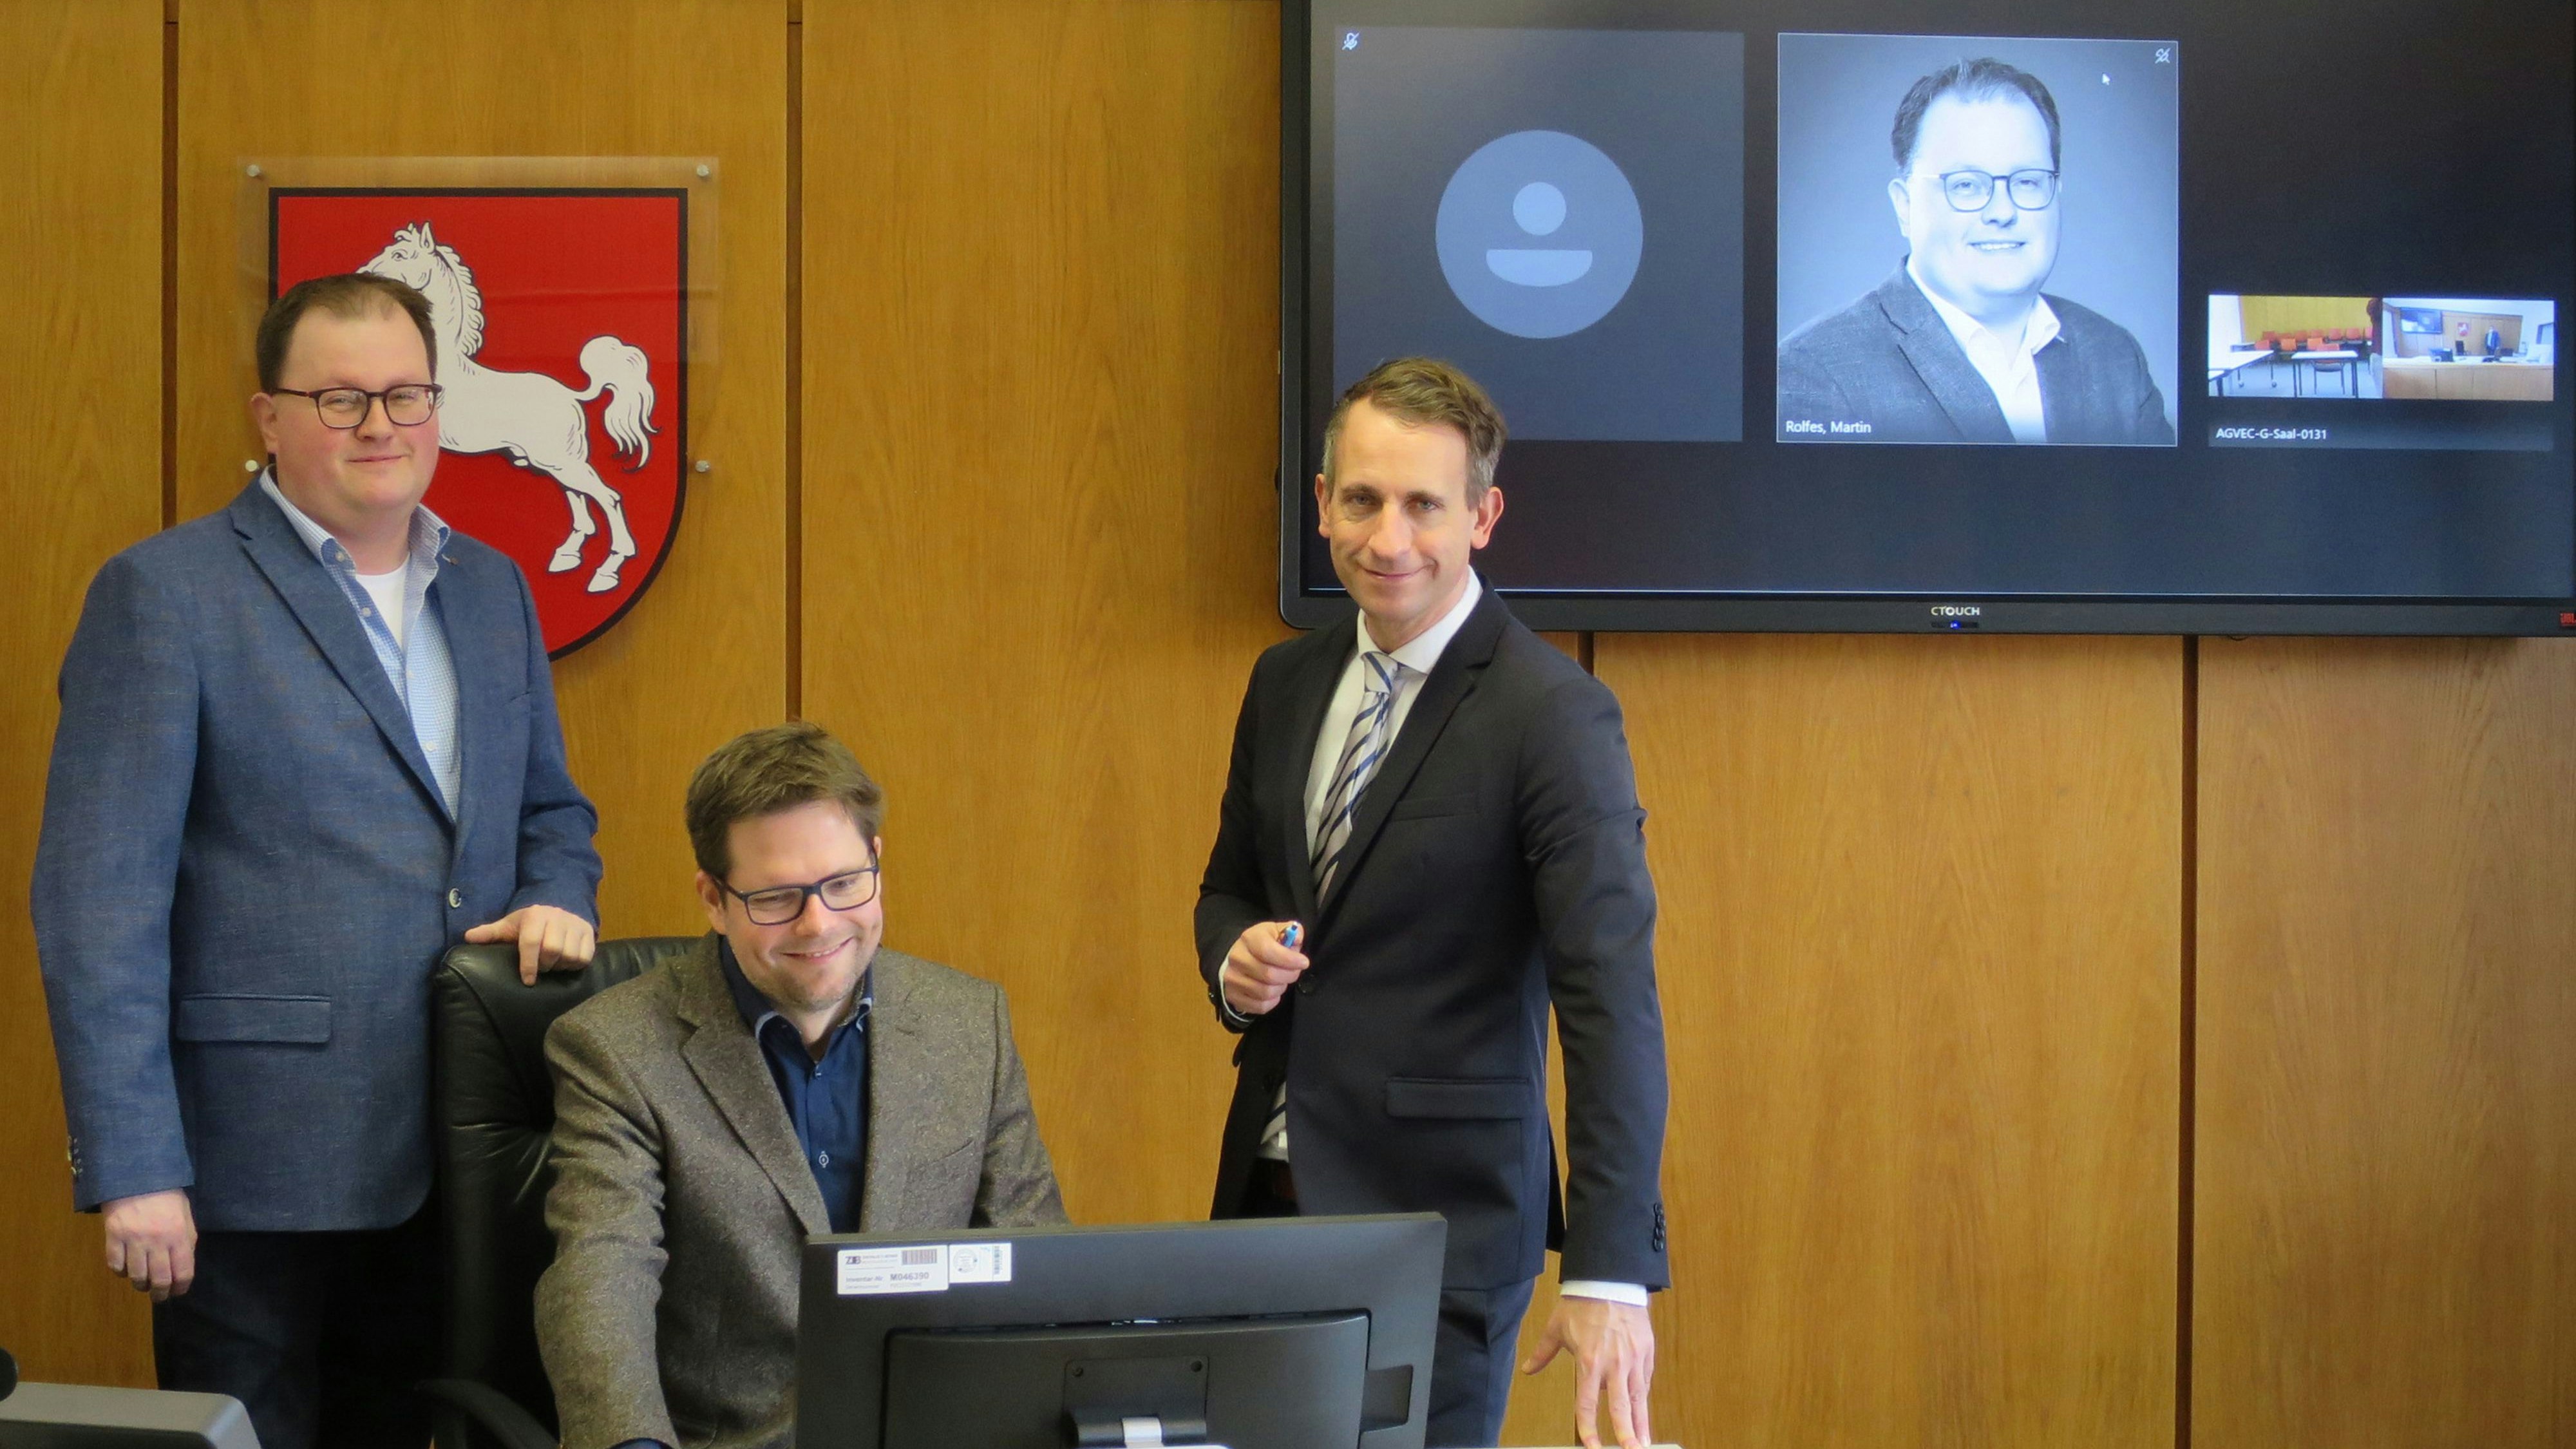 Geschäftsleiter Martin Rolfes, der stellvertretende Direktor Tobias Vogt und Amtsgerichtsdirektor Dr. Ralf Seifert bei der Vorstellung der neuen Videoverhandlung. Foto: Esslinger                               